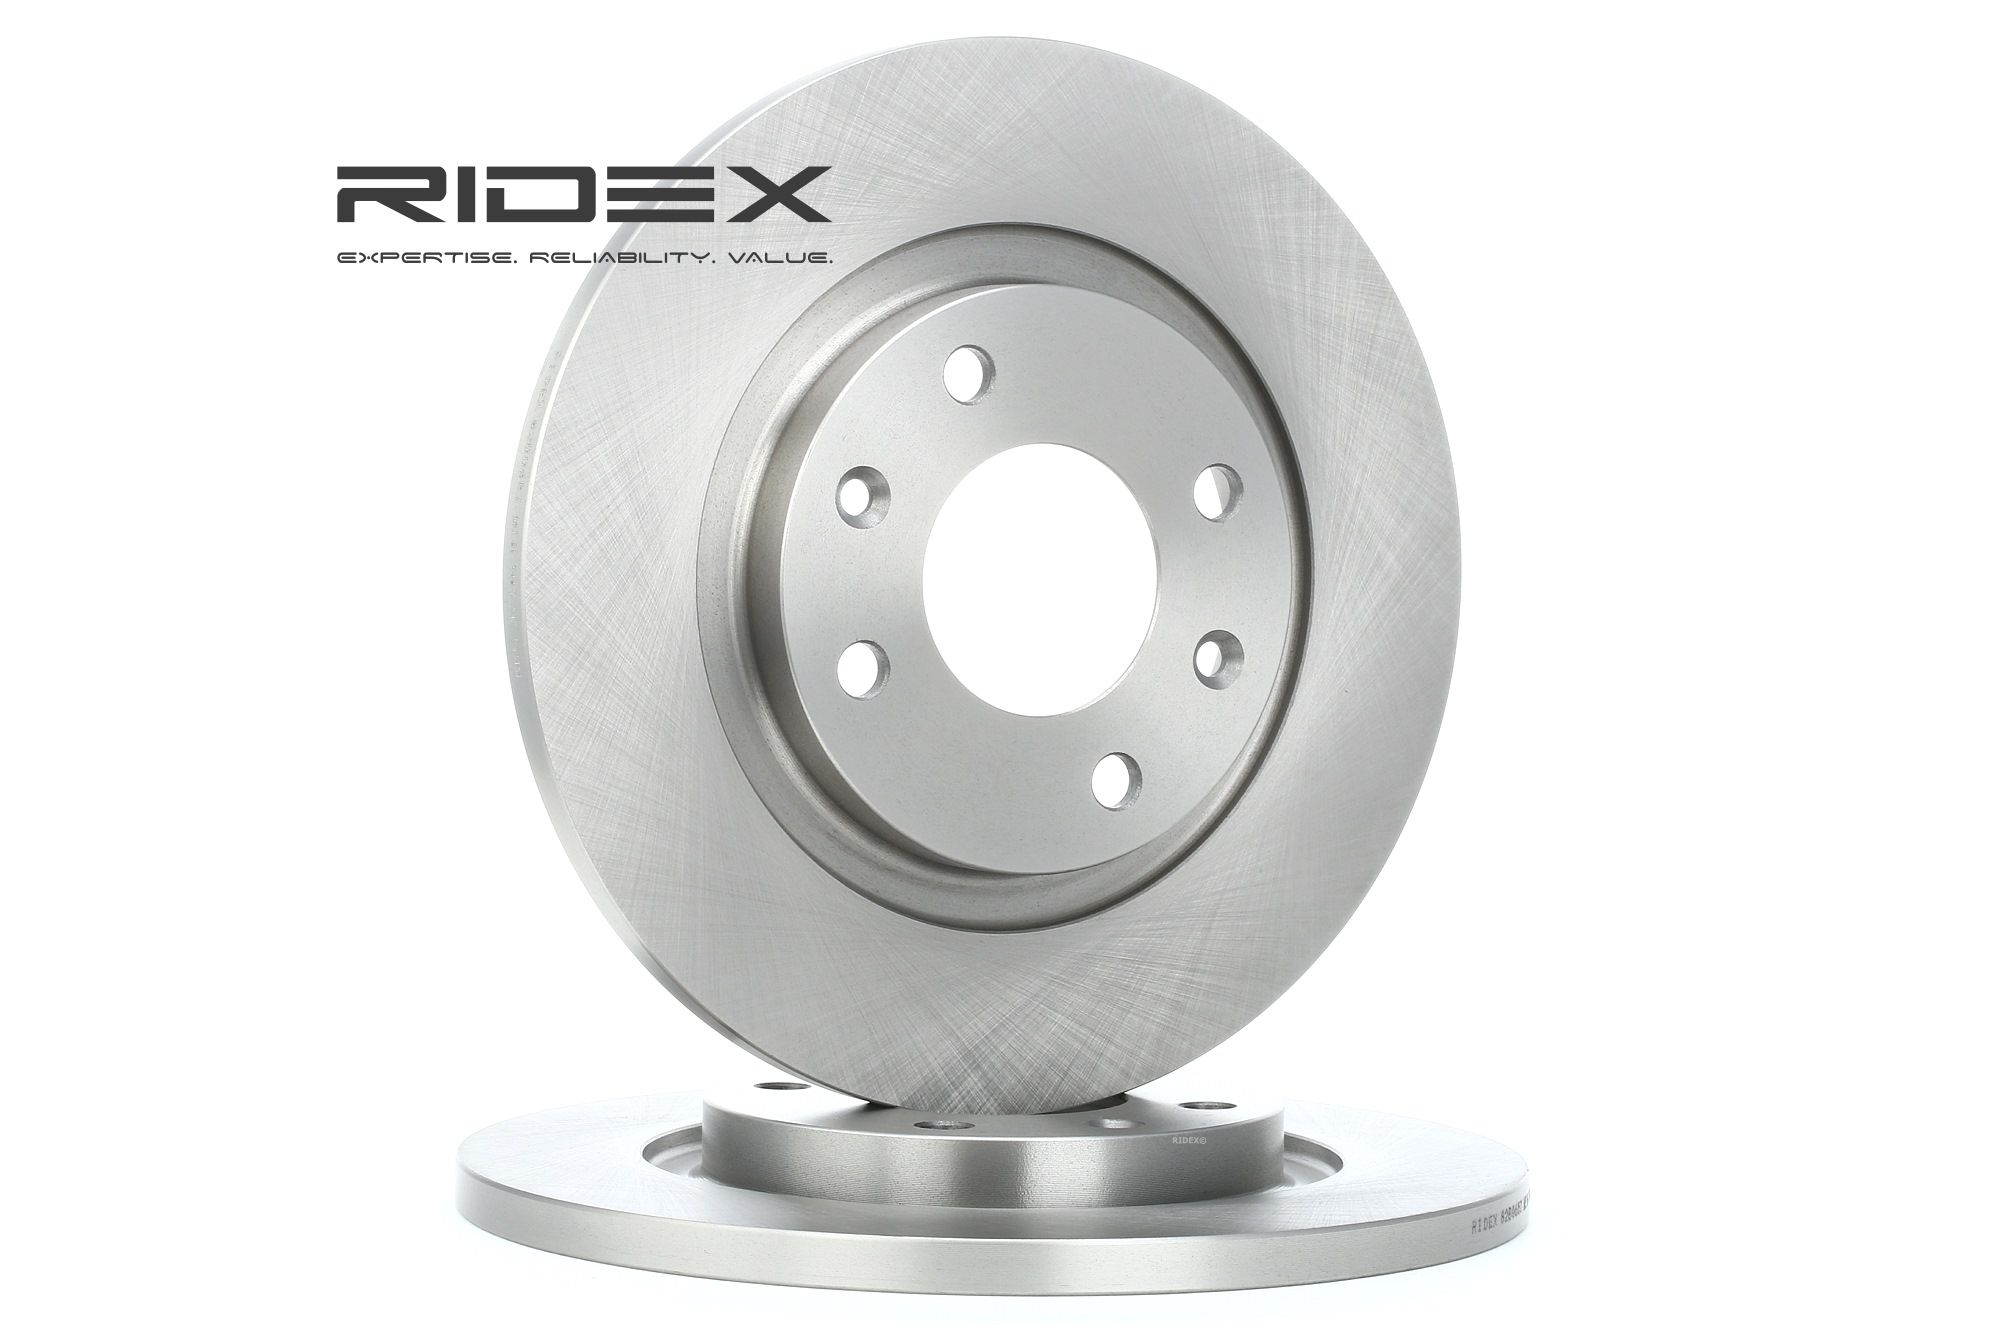 Originali 82B0657 RIDEX Disco freno esperienza e prezzo